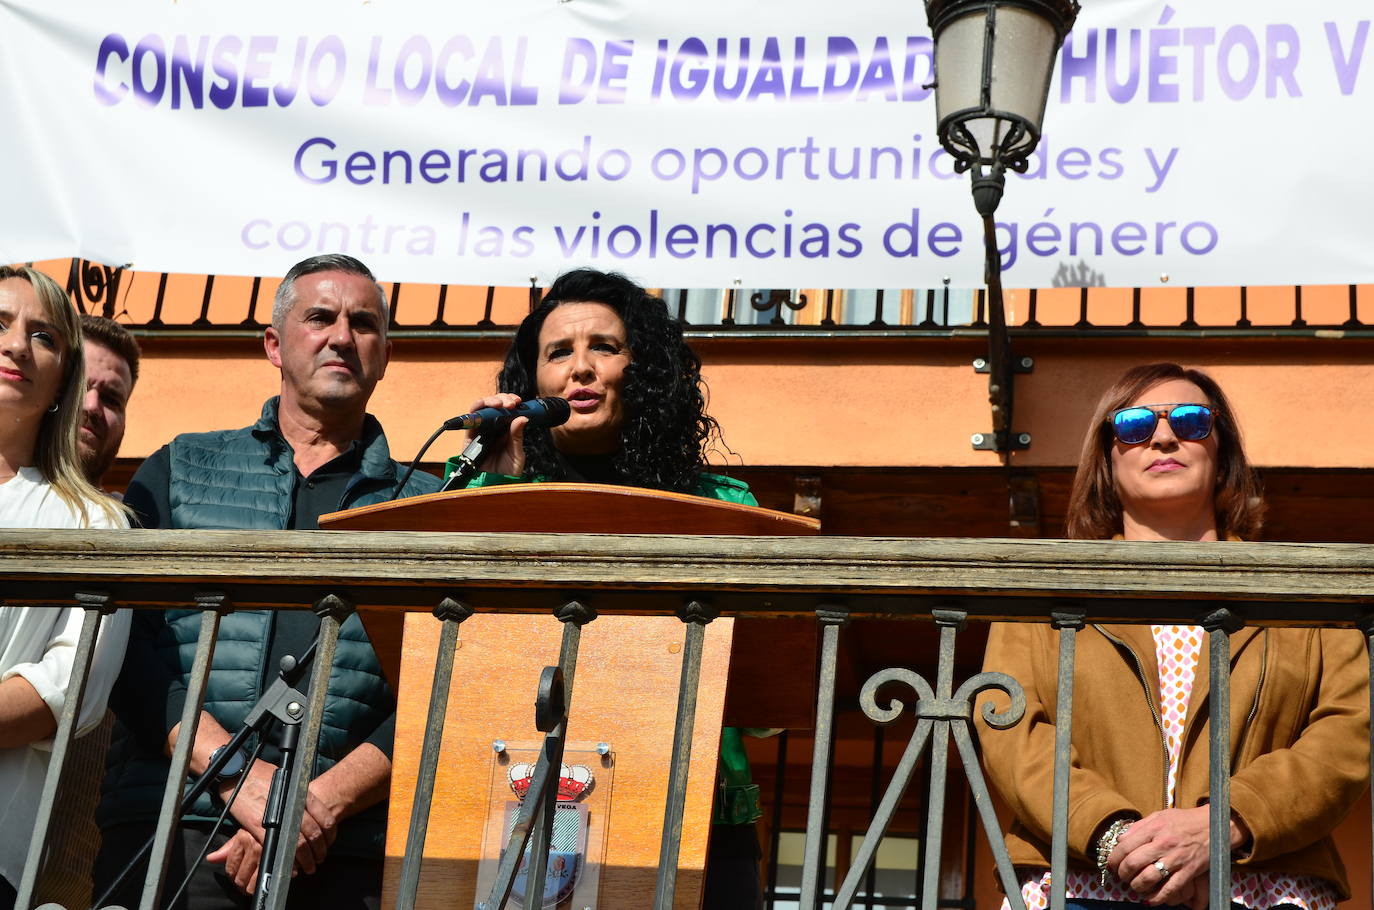 Miembros de la corporación municipal, con la alcaldesa, Elena Duque, en el centro, hoy en la puerta del Ayuntamiento de Huétor Vega.